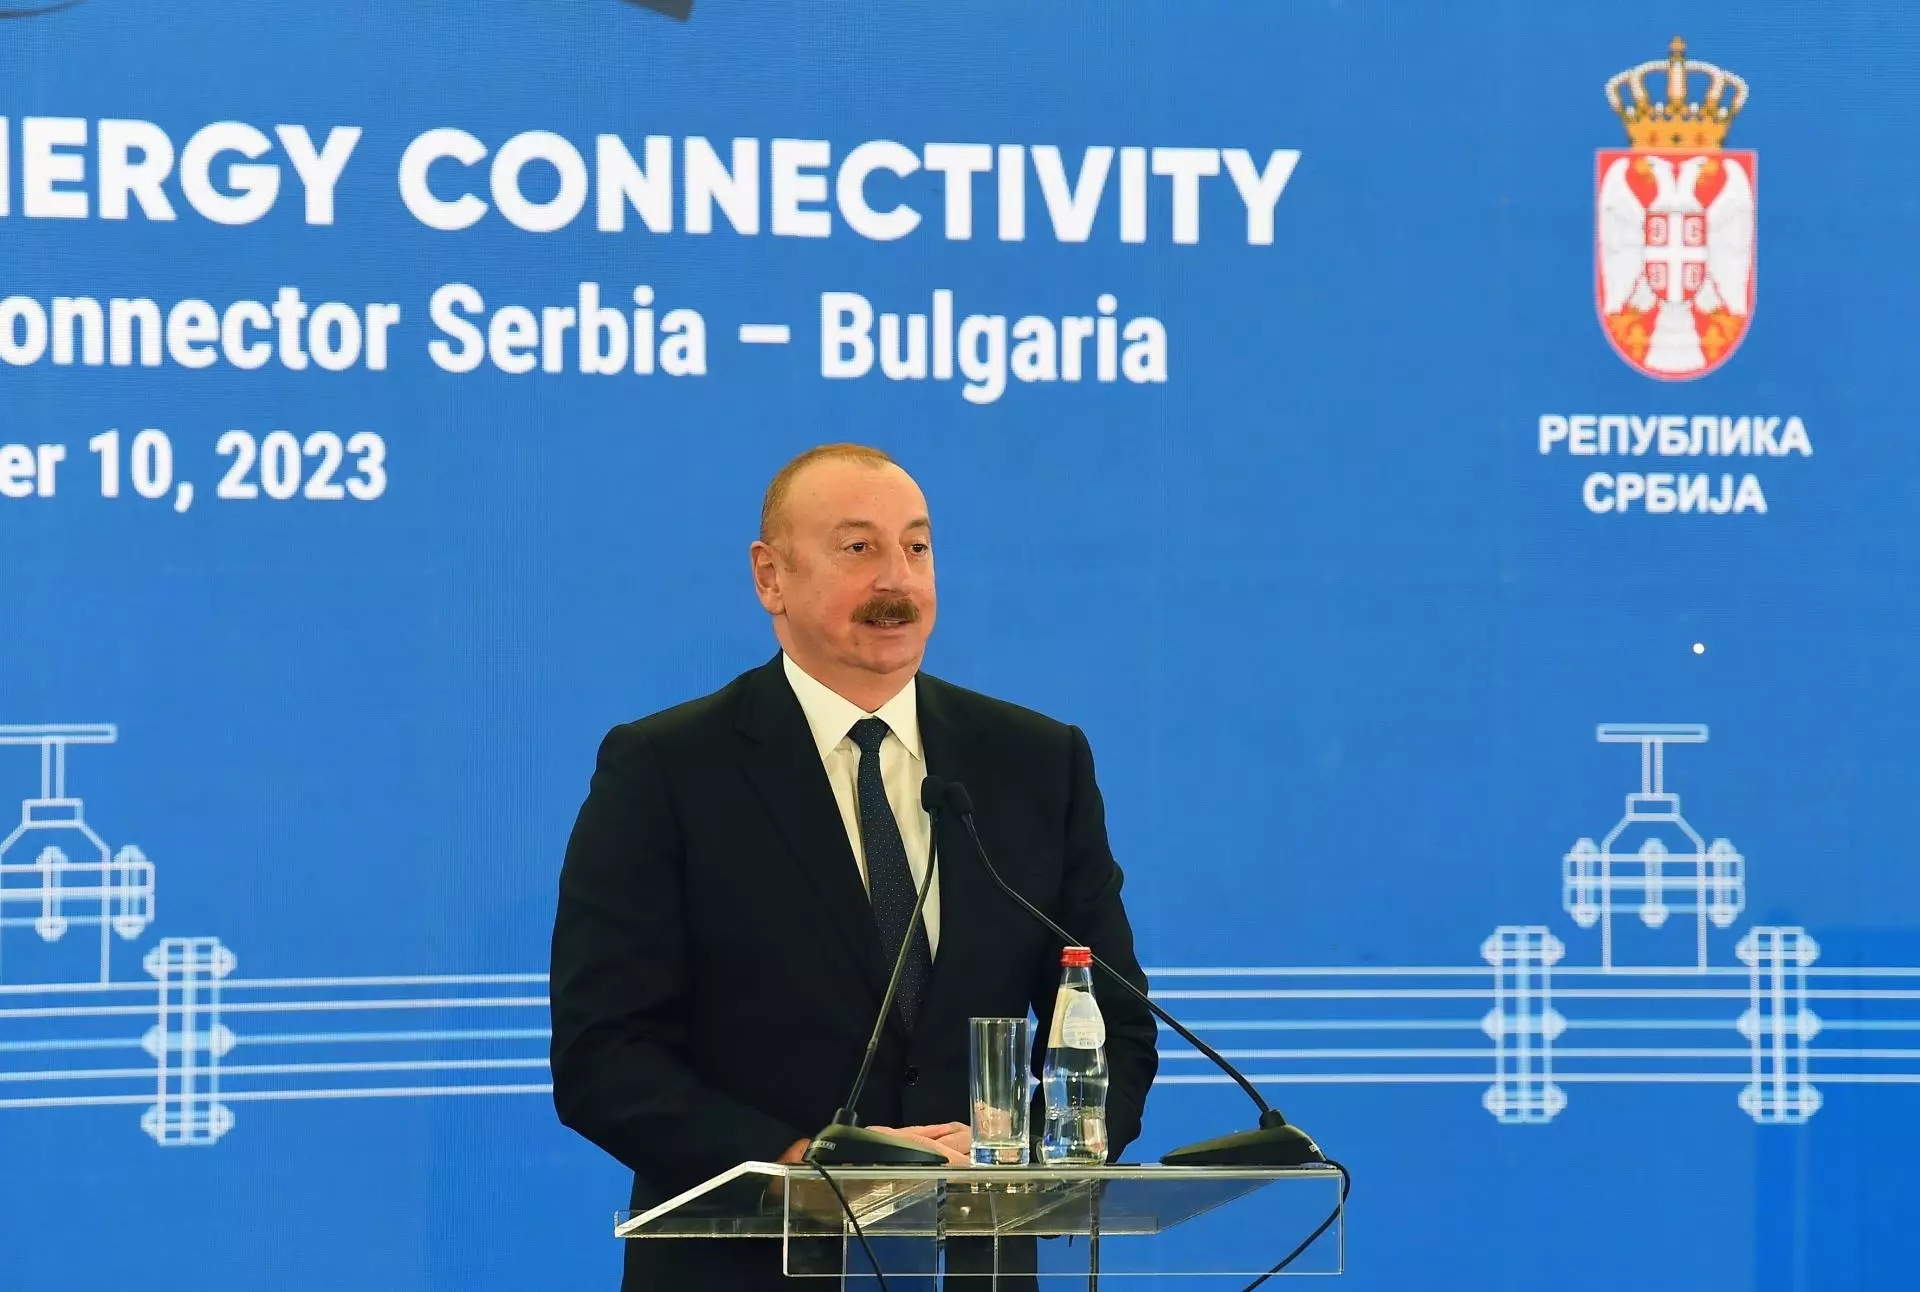 Prezident İlham Əliyev Serbiya-Bolqarıstan interkonektorunun açılış mərasimində iştirak edib - YENİLƏNİB